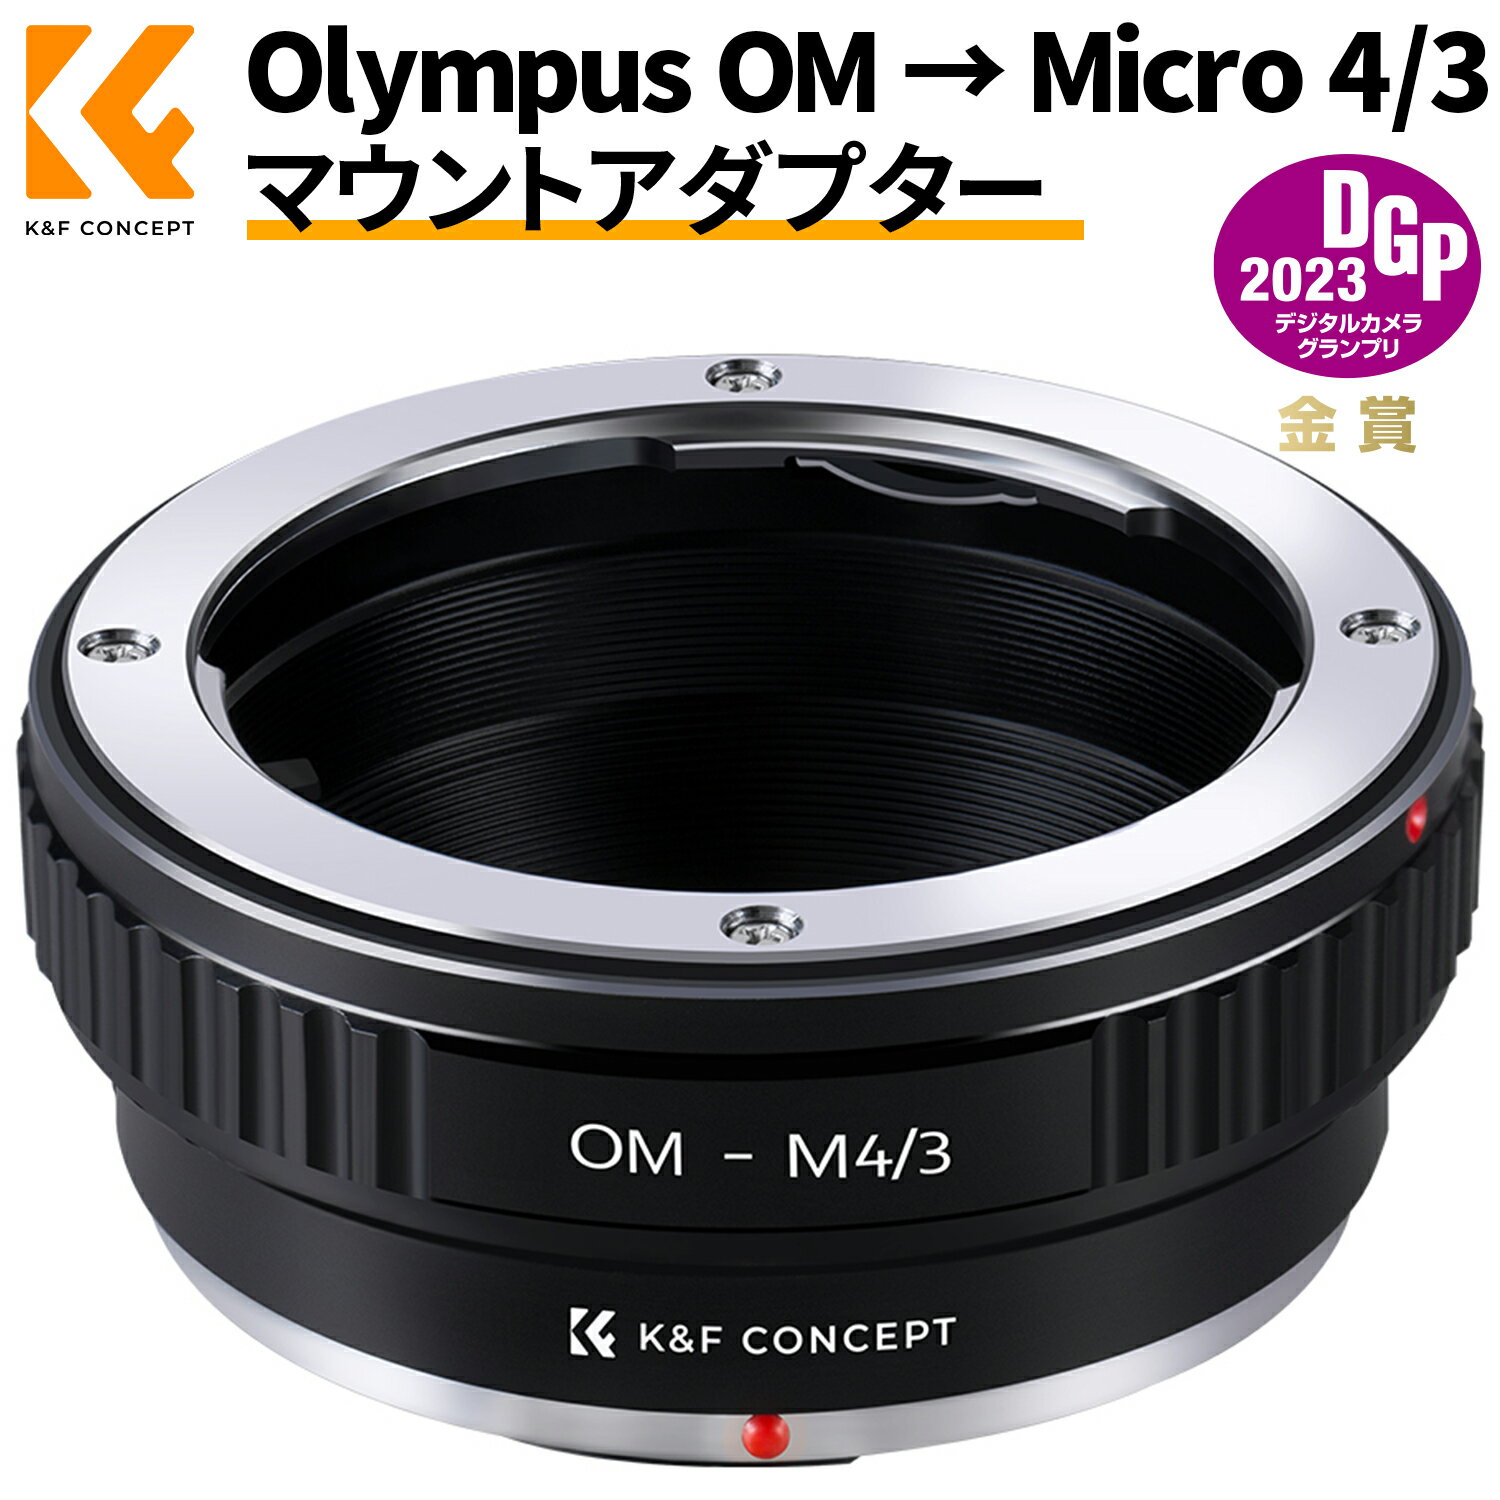 ＼着後レビュで特典！／ 【OM-M4/3】 マウントアダプター マイクロフォーサーズ OMマウントレンズ- マウントボディ用 Olympus OMレンズ- Micro 4/3カメラ装着用レンズアダプター K&F Concept